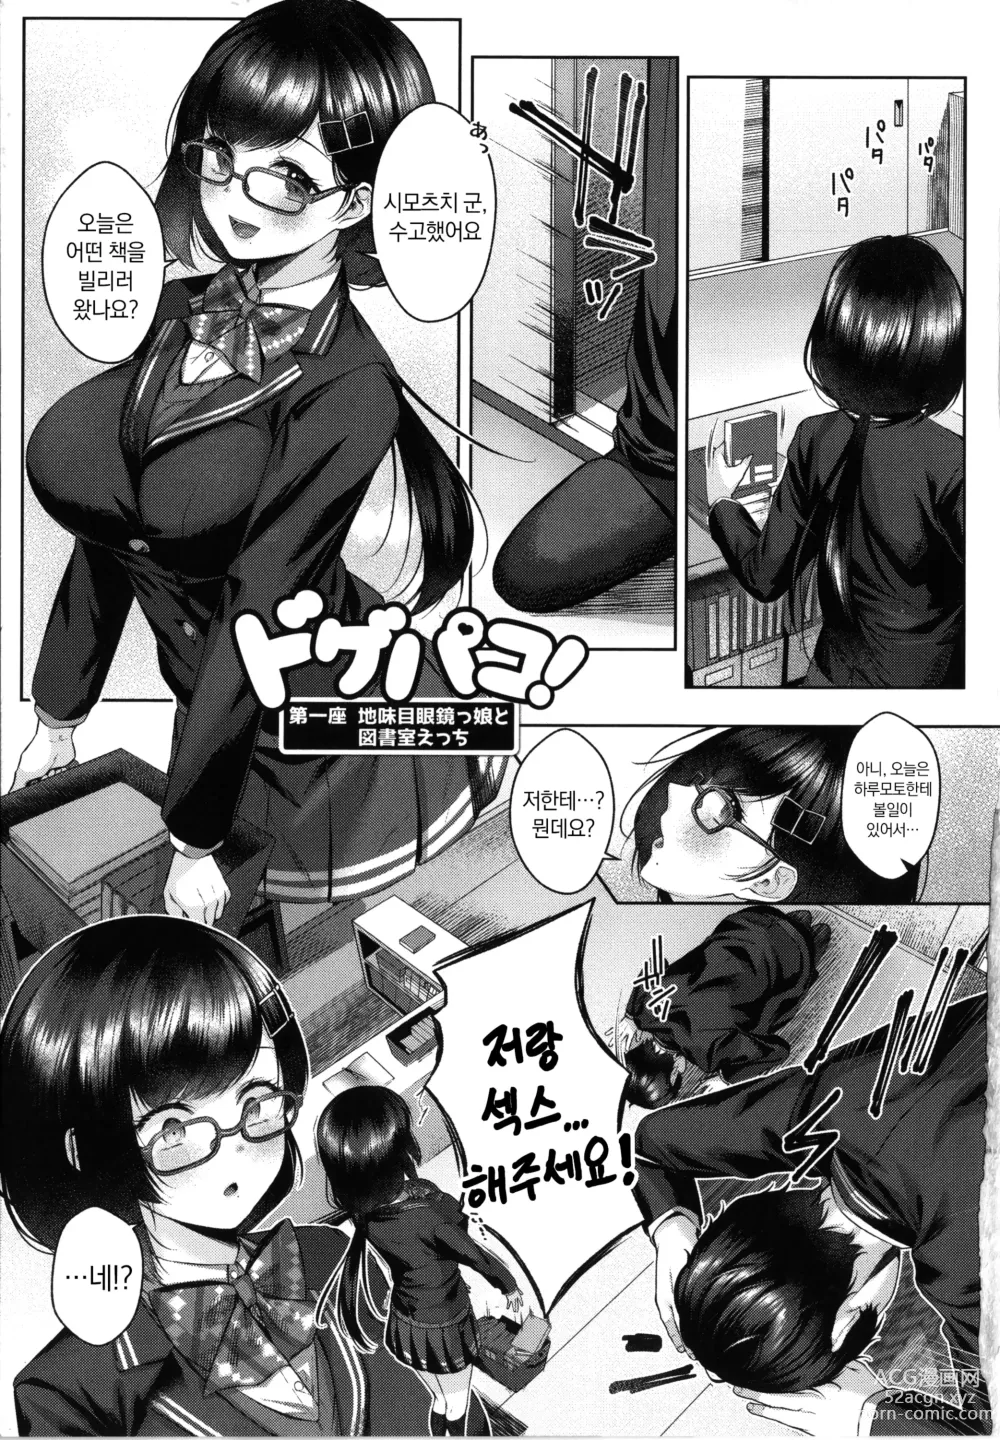 Page 7 of manga 도게파코 + 8P 소책자